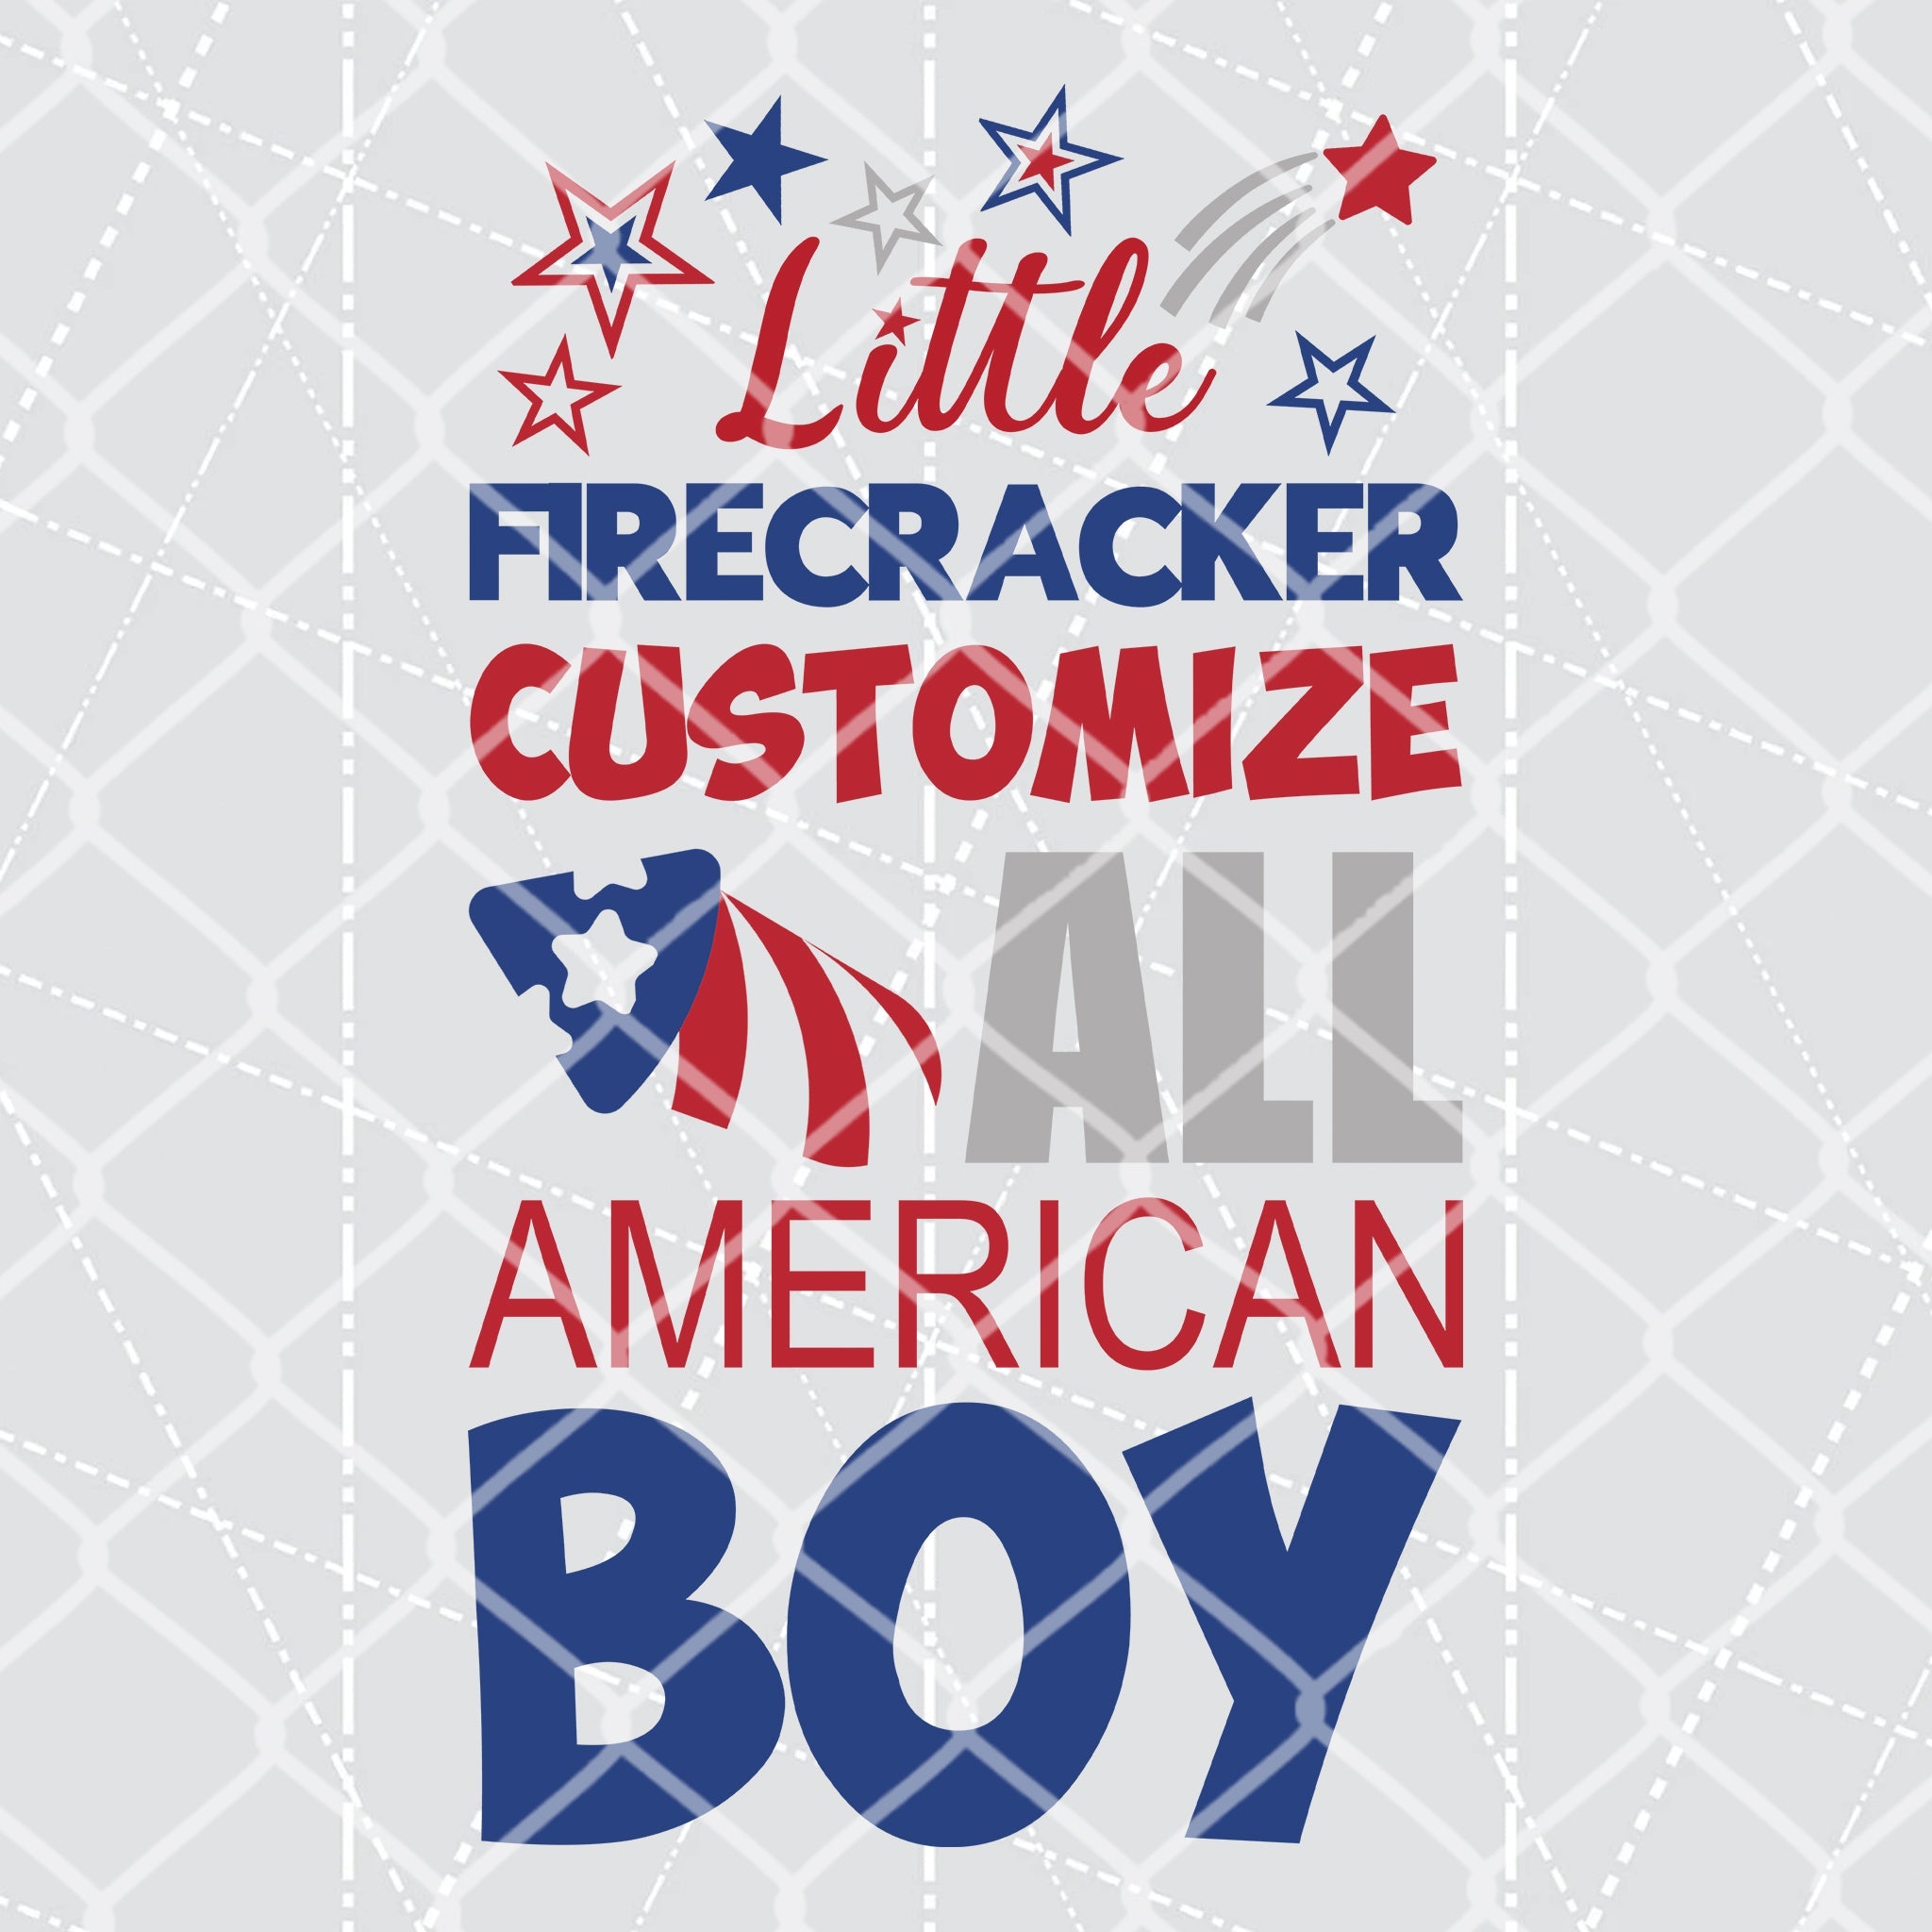 Little Firecracker All American Boy and Girl - Customize